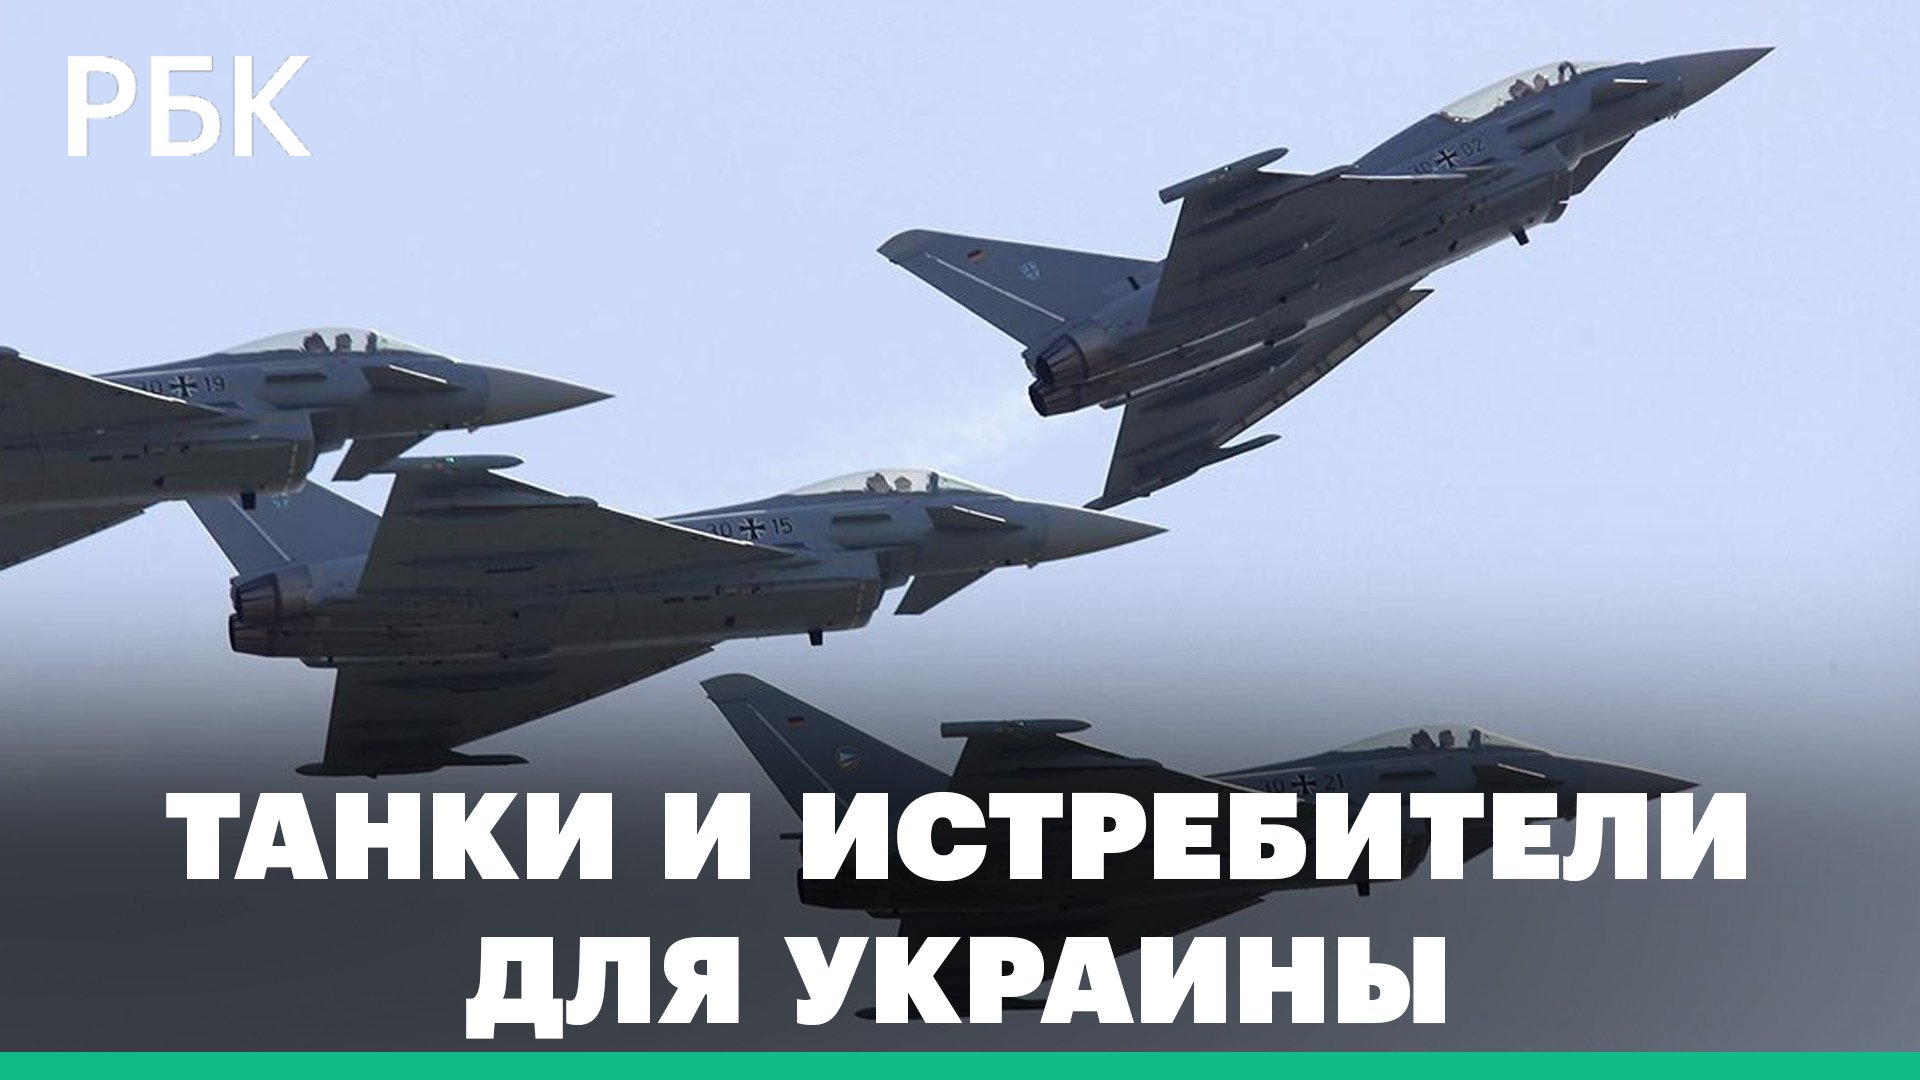 Запад начал обсуждать поставки Украине истребителей. Когда новые танки попадут в распоряжение Киева